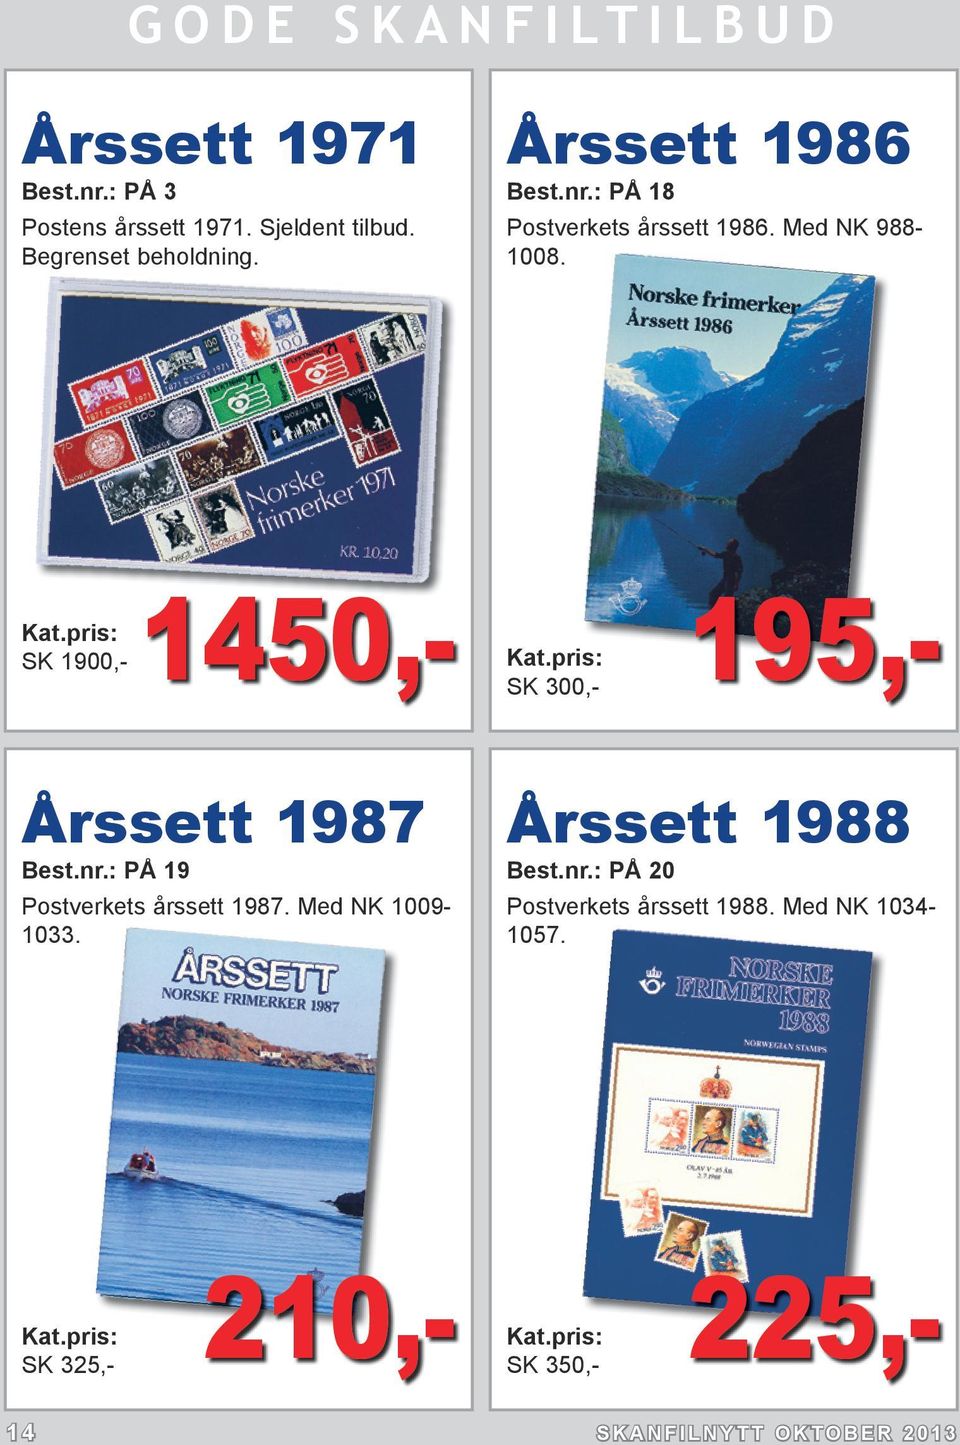 SK 1900,- 1450,- SK 300,- 195,- Årssett 1987 Best.nr.: PÅ 19 Postverkets årssett 1987.